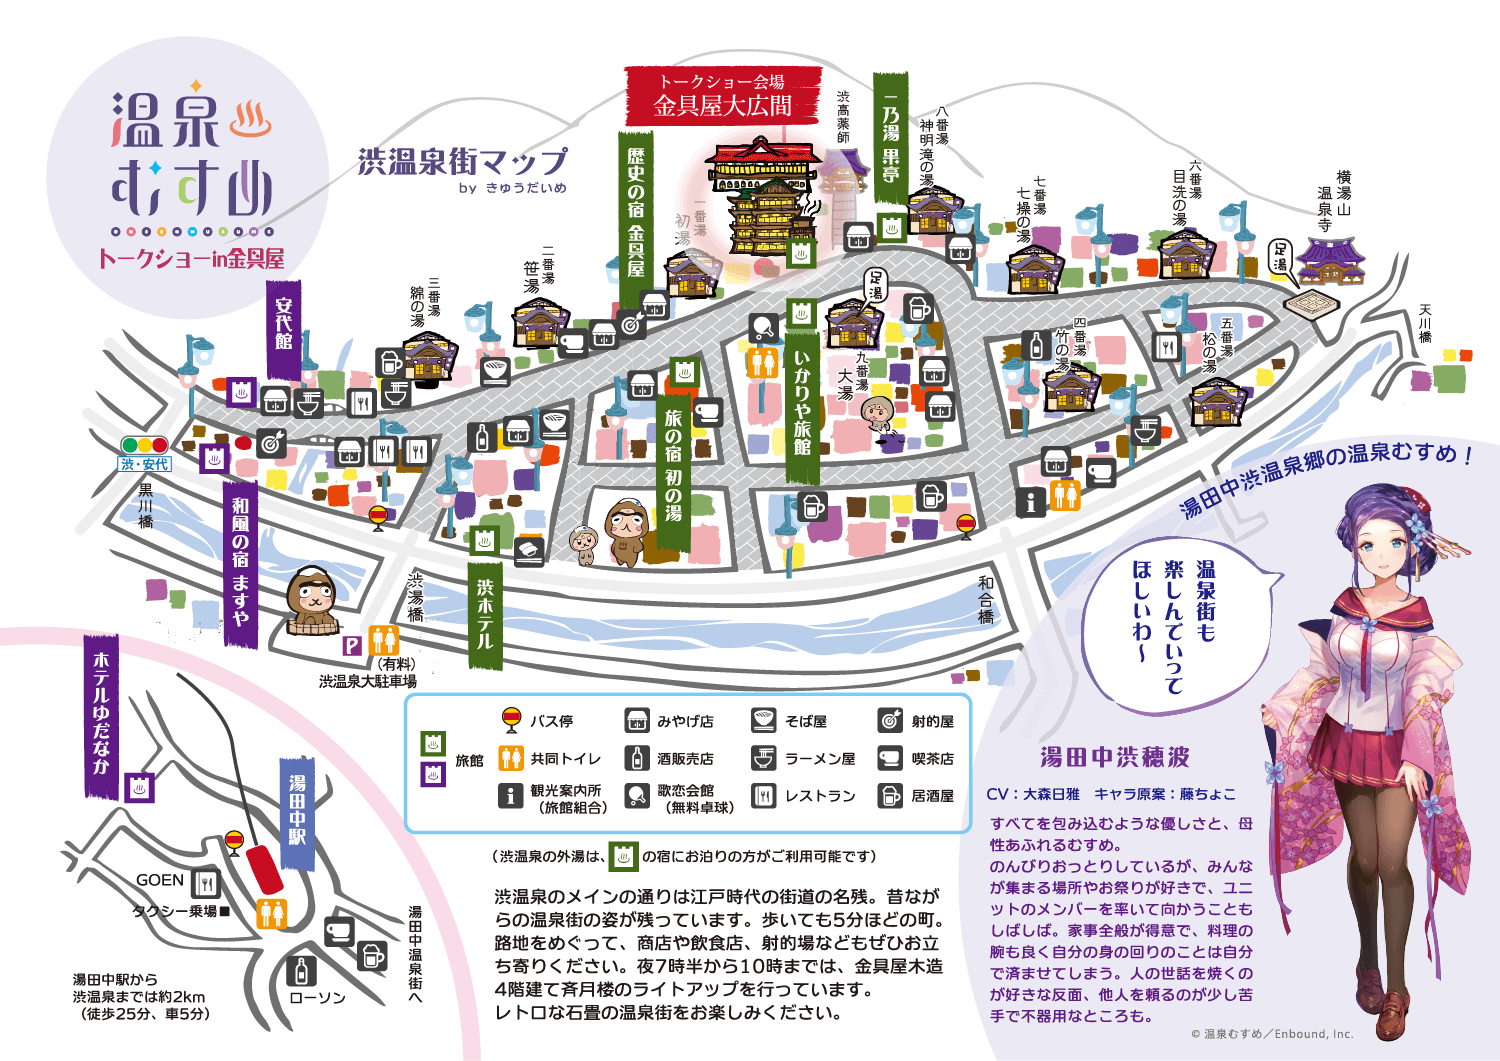 温泉むすめトークショー in金具屋 渋温泉街マップ